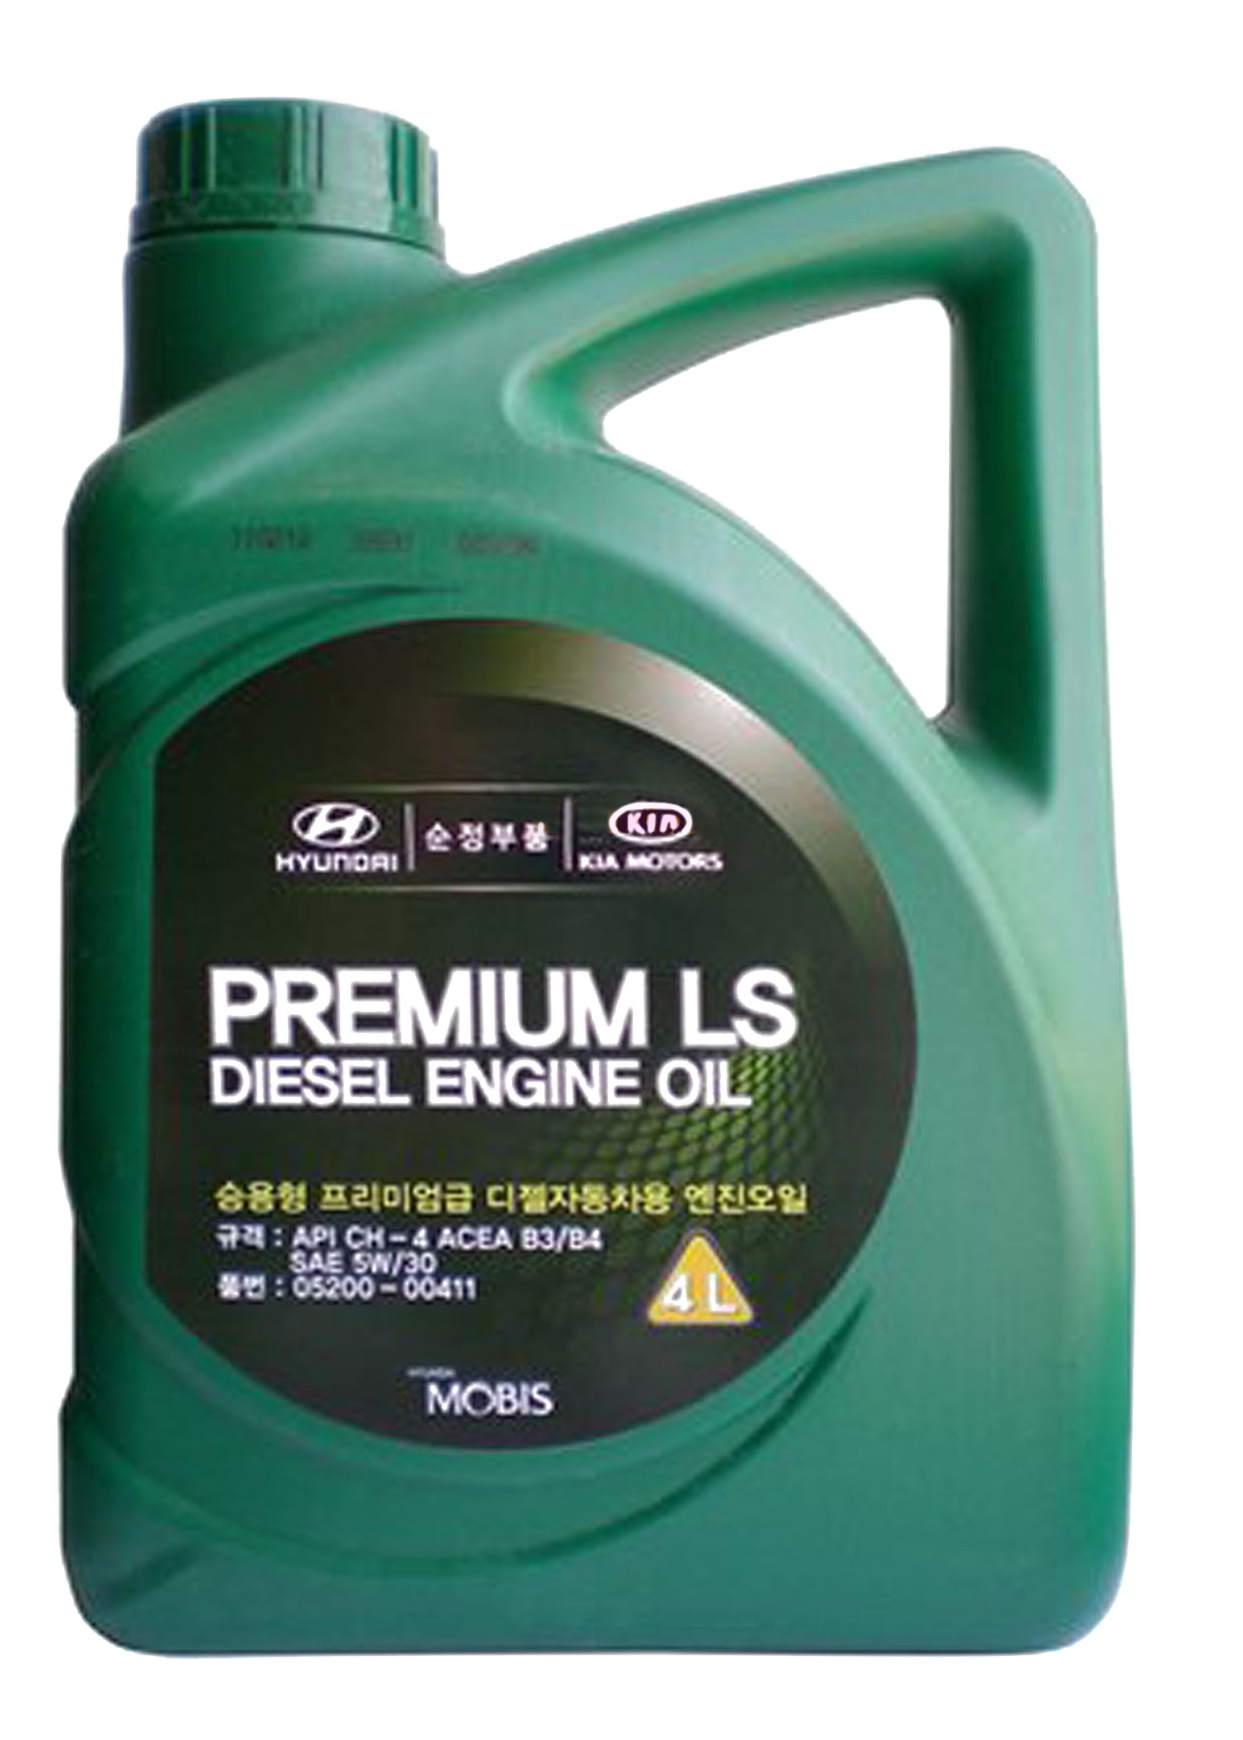 Моторное масло KIA полусинтетическое Premium Ls Diesel Api Ch-4 Acea B3/B4 4л